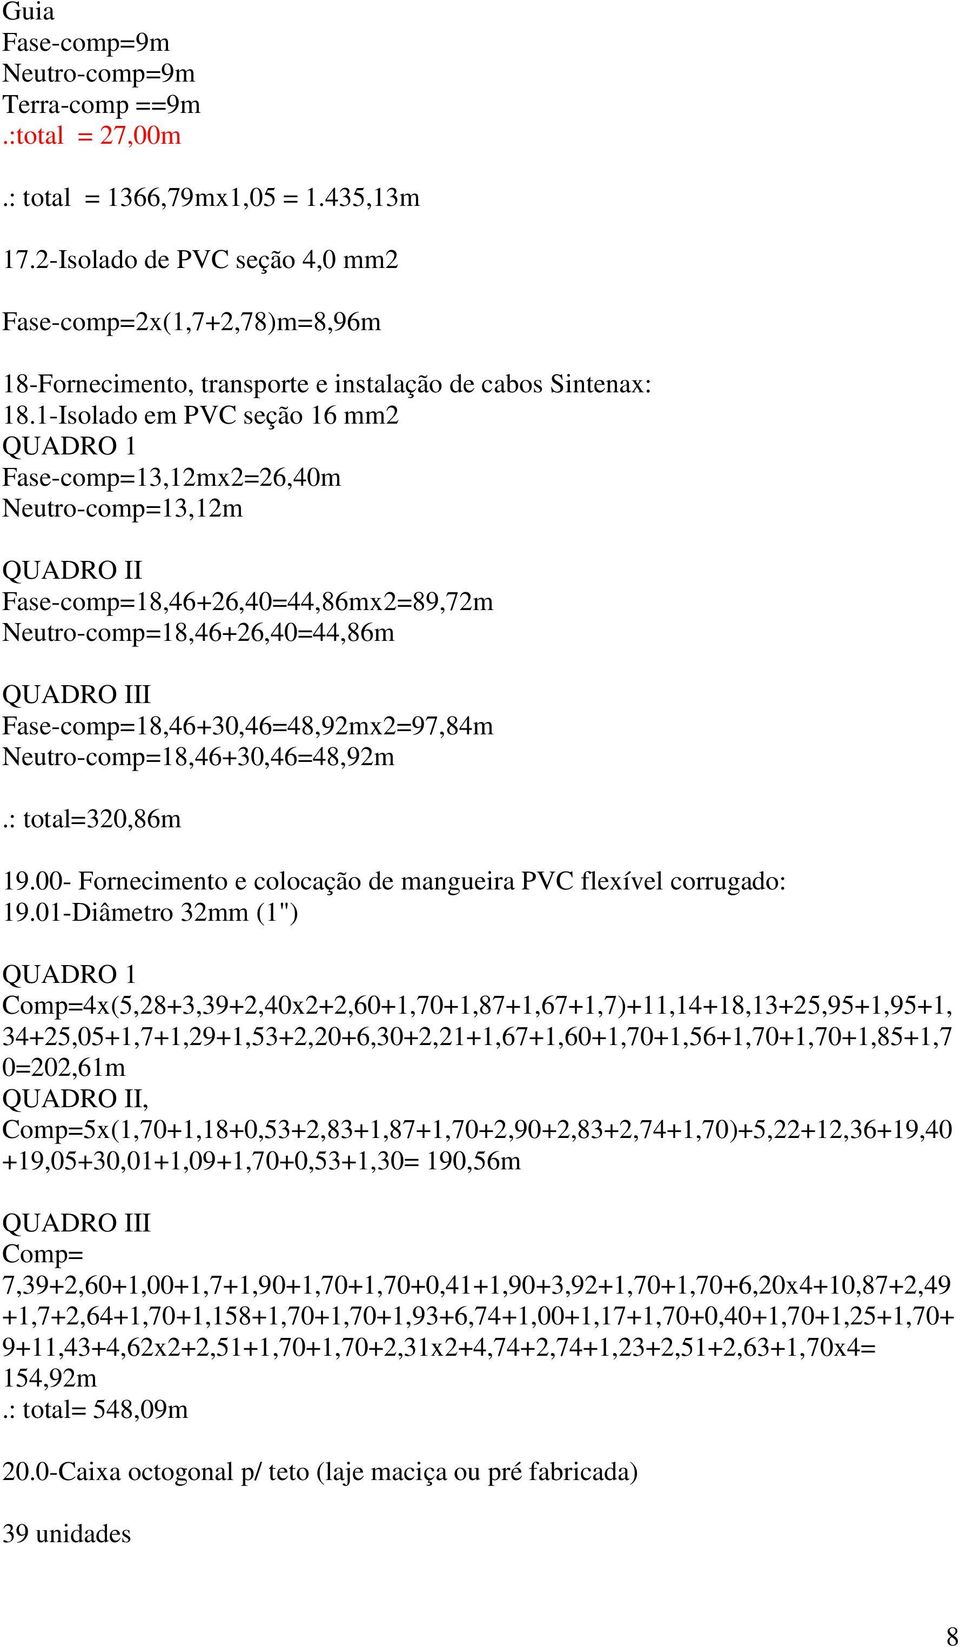 1-Isolado em PVC seção 16 mm2 QUADRO 1 Fase-comp=13,12mx2=26,40m Neutro-comp=13,12m QUADRO II Fase-comp=18,46+26,40=44,86mx2=89,72m Neutro-comp=18,46+26,40=44,86m QUADRO III